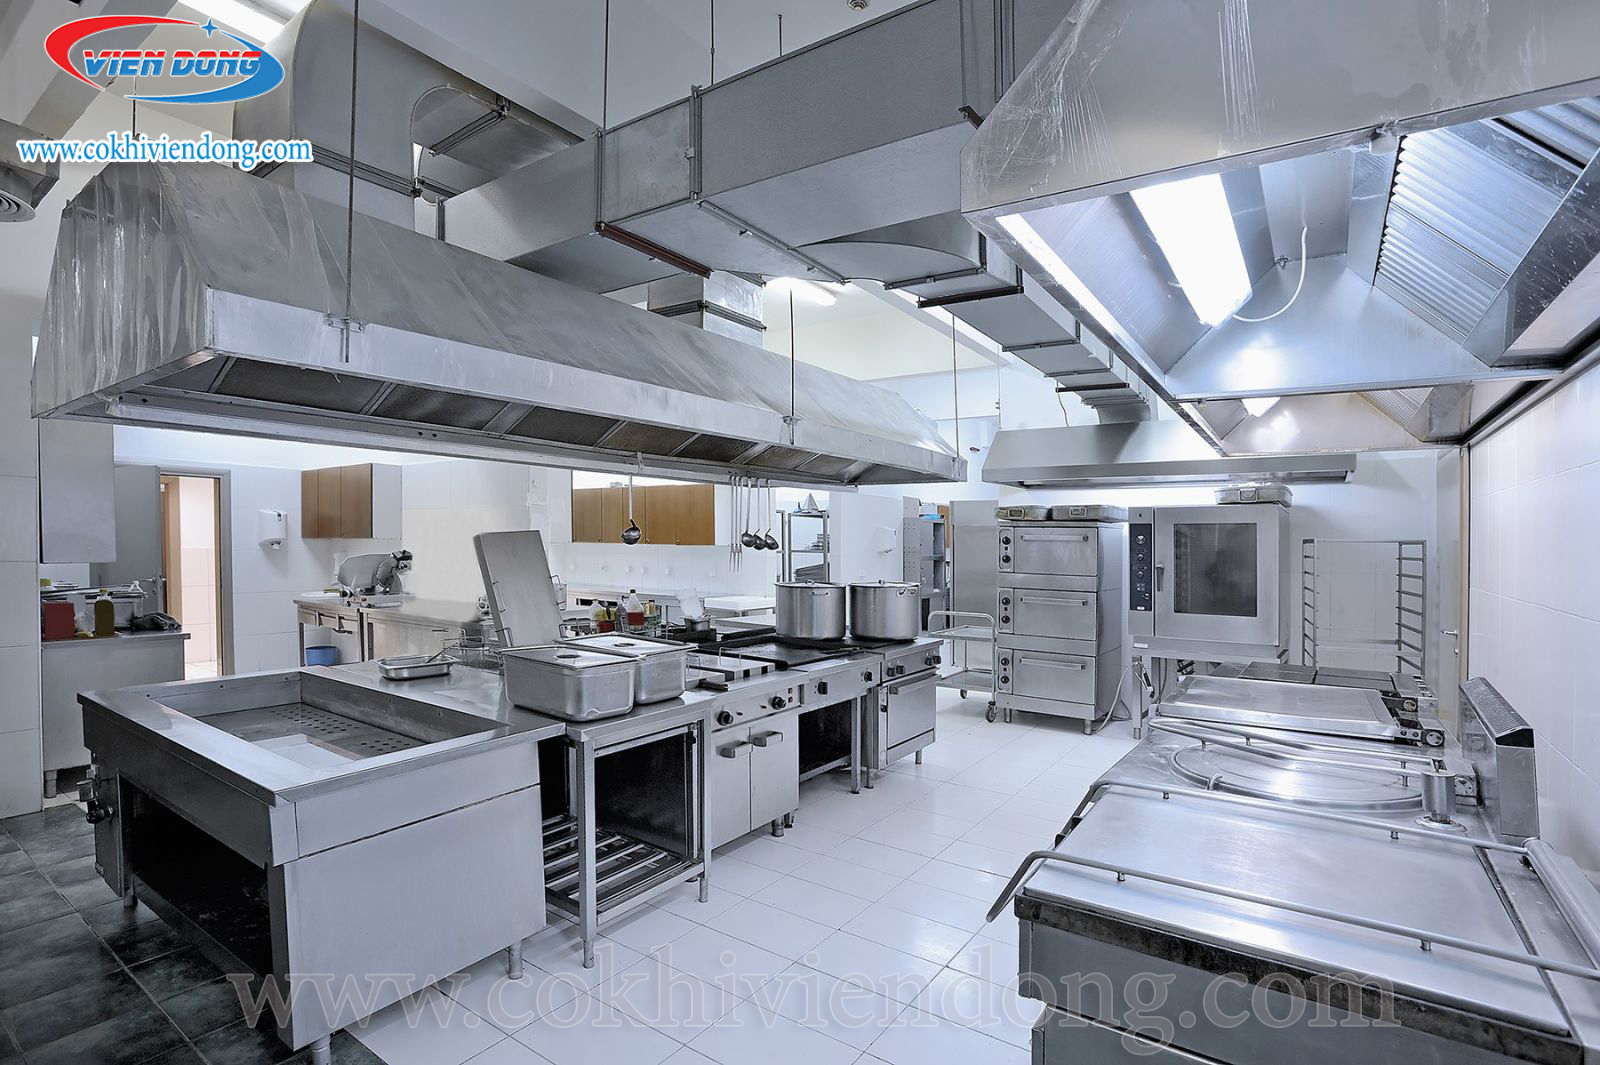 Lắp đặt bếp công nghiệp - Hệ thống thiết bị bếp công nghiệp chất lượng